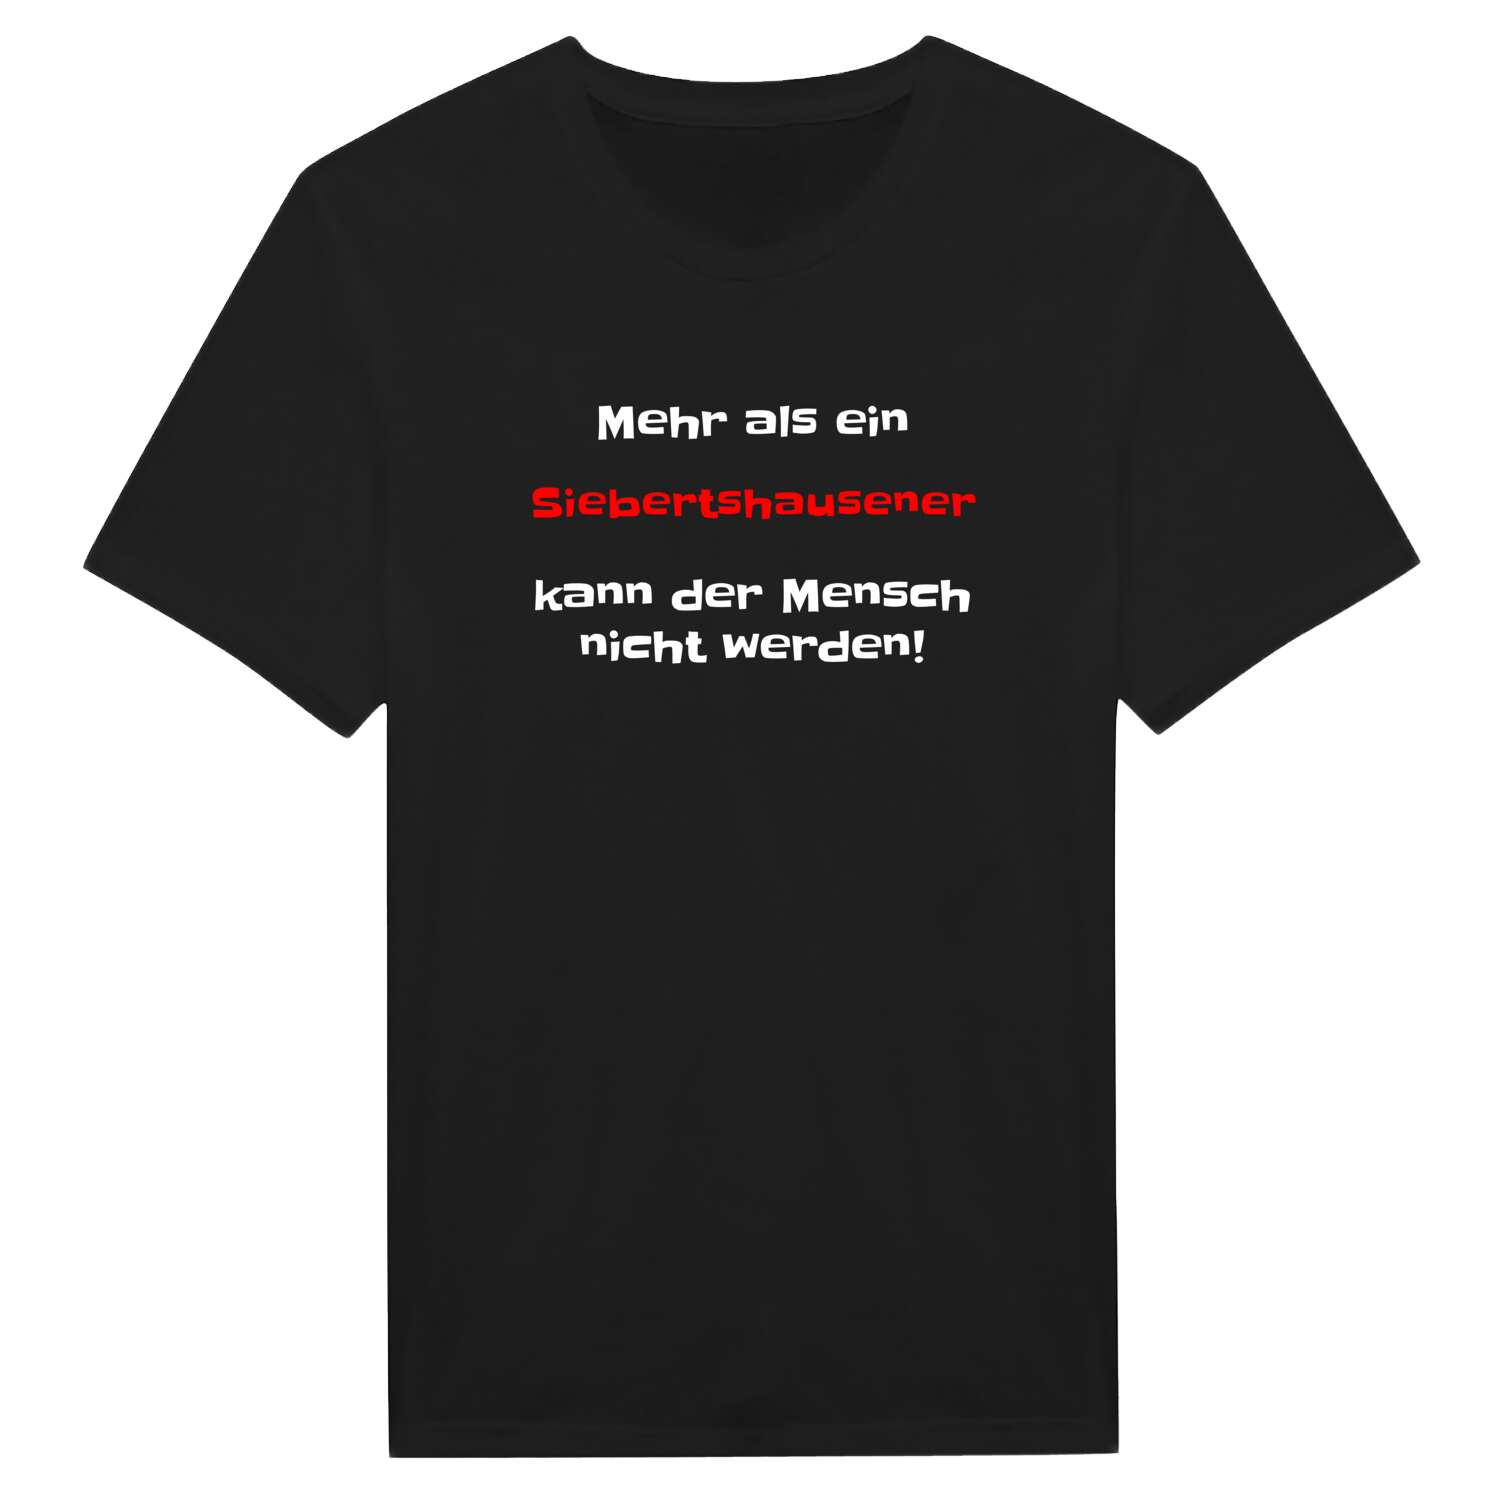 Siebertshausen T-Shirt »Mehr als ein«